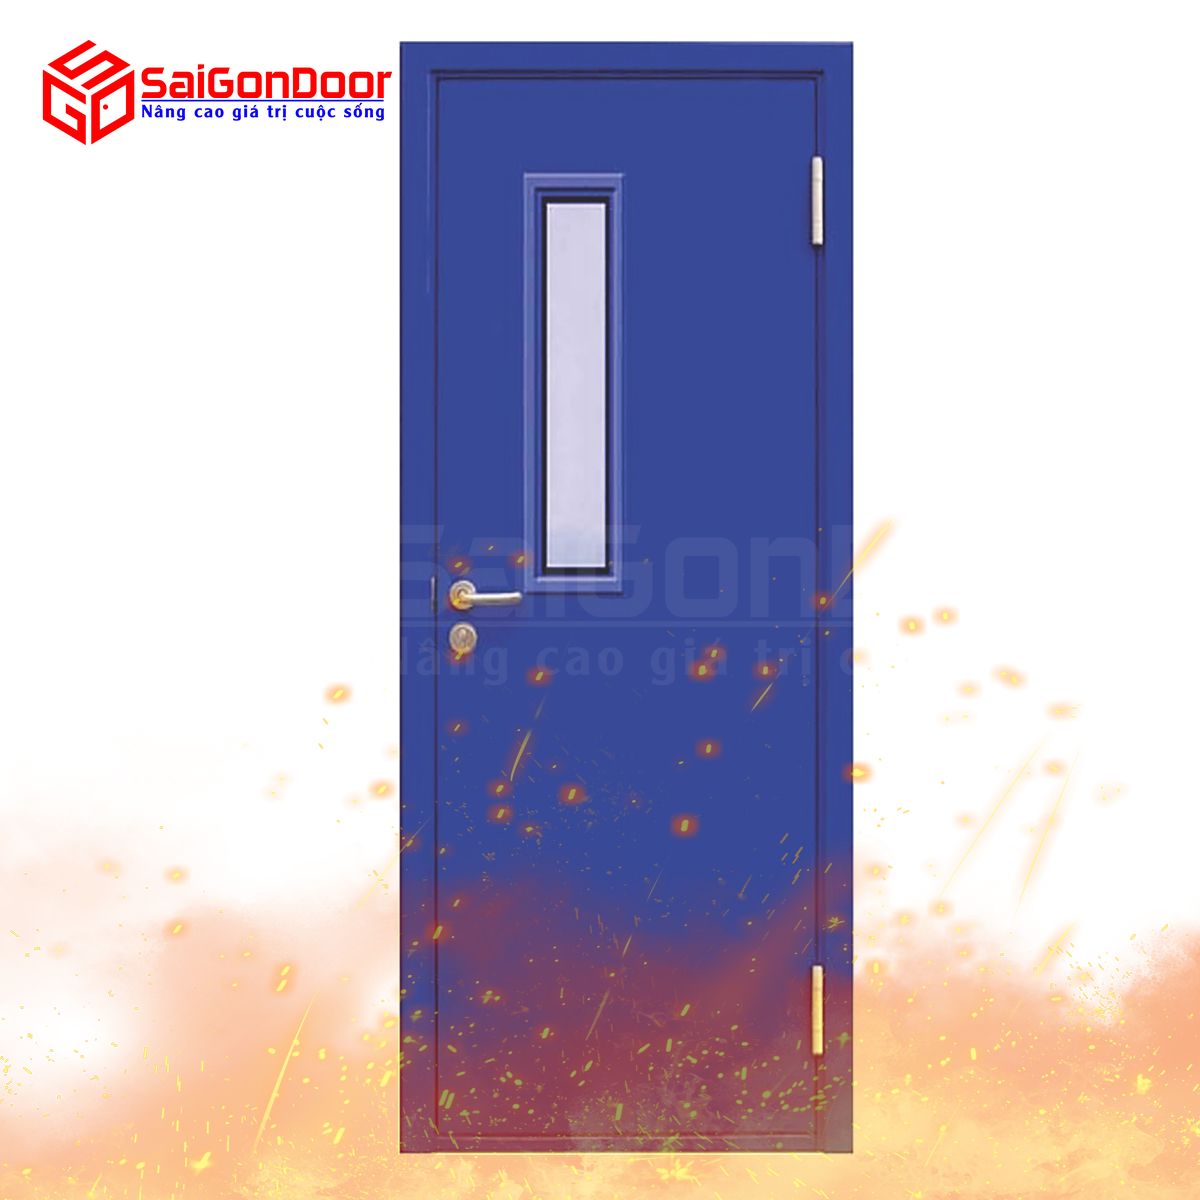 SaiGonDoor cung cấp cửa thoát hiểm - cửa thép chống cháy